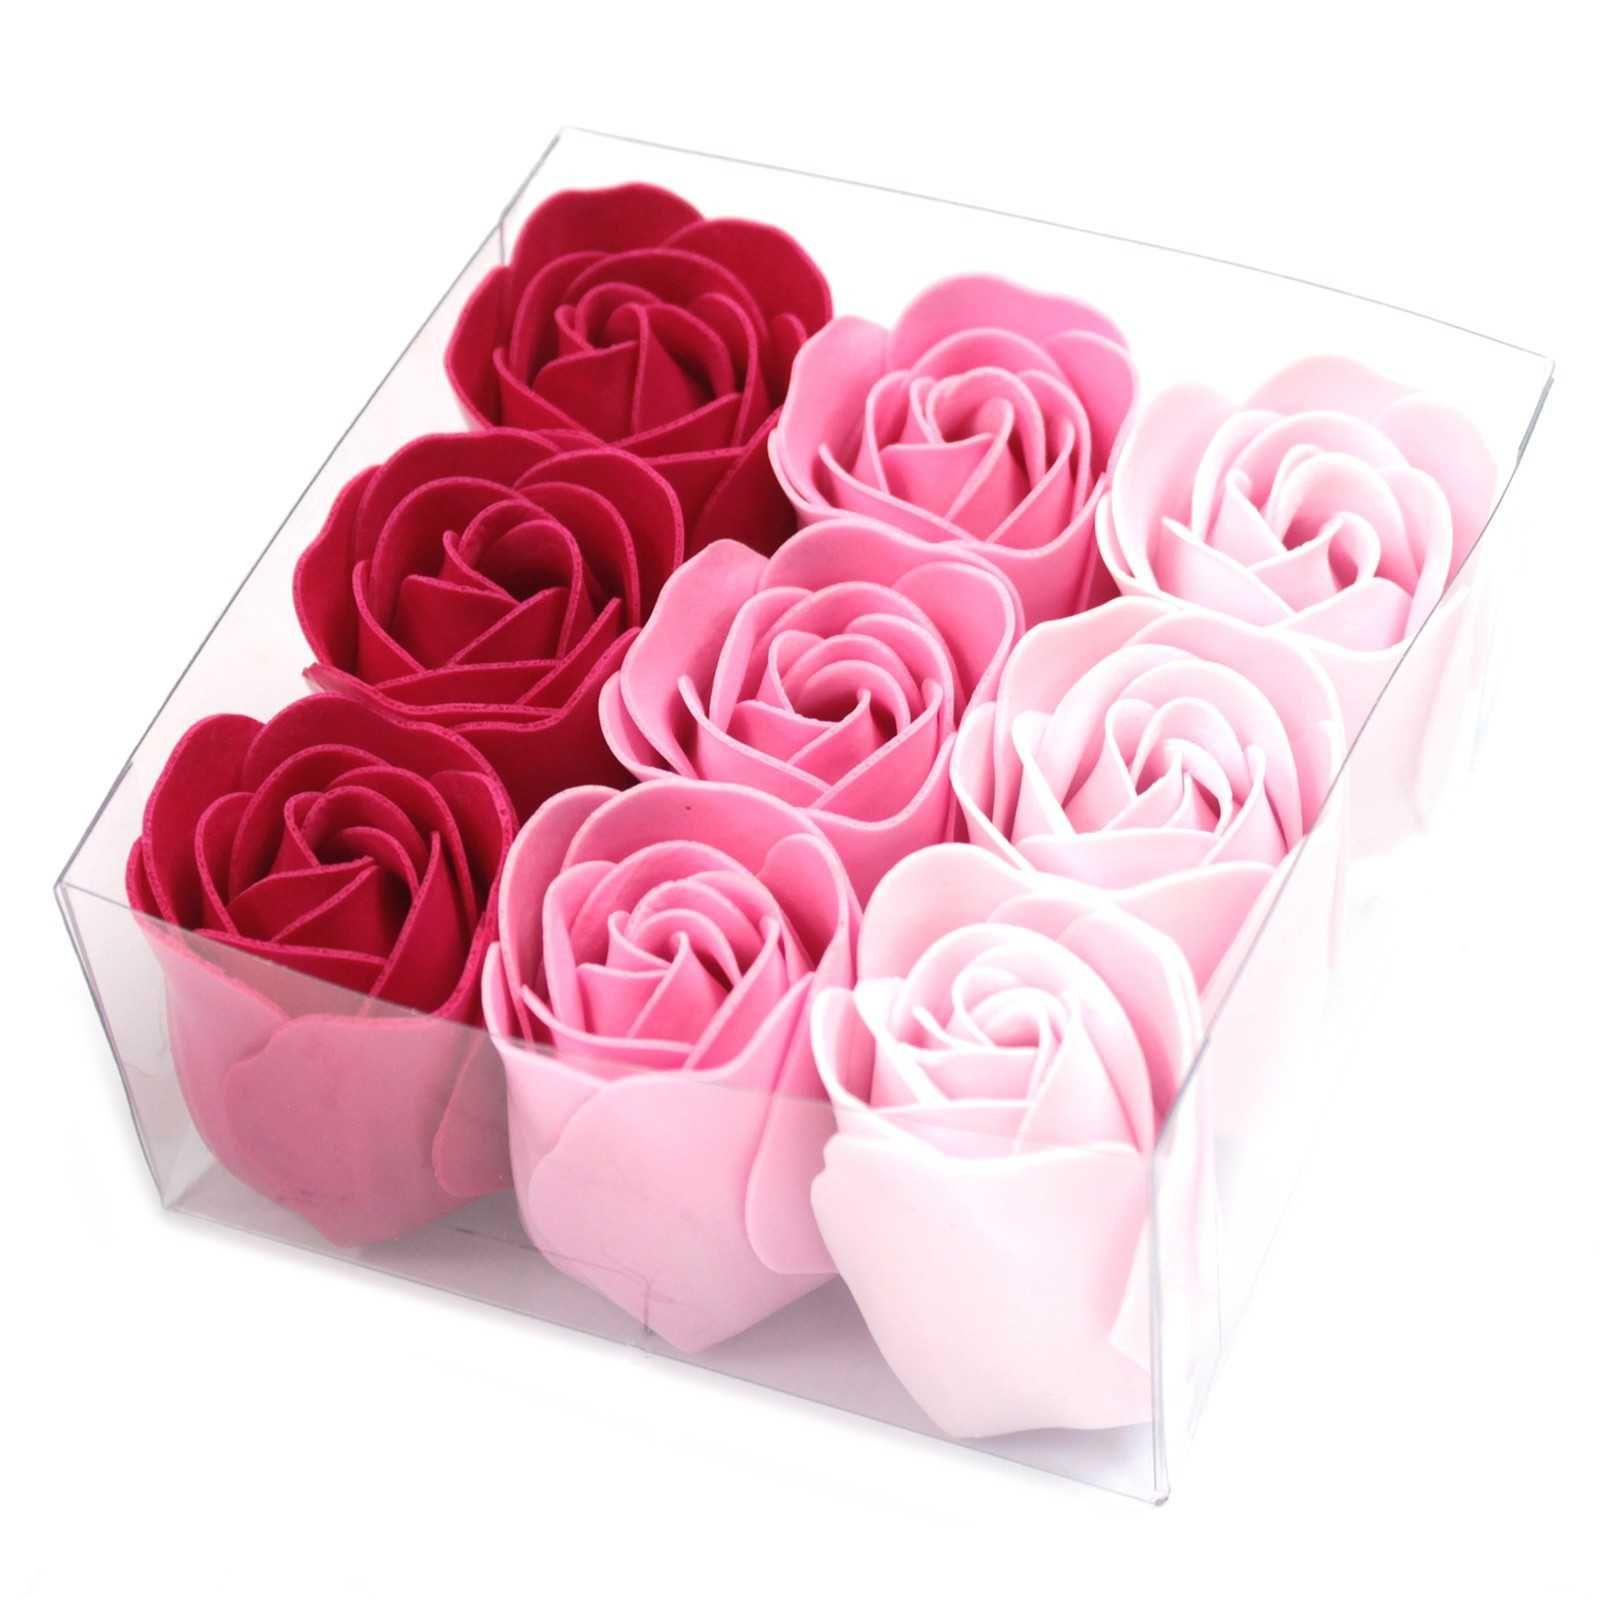 Zestaw 9 Mydlanych Różowych Róż - Prezent / Upominek